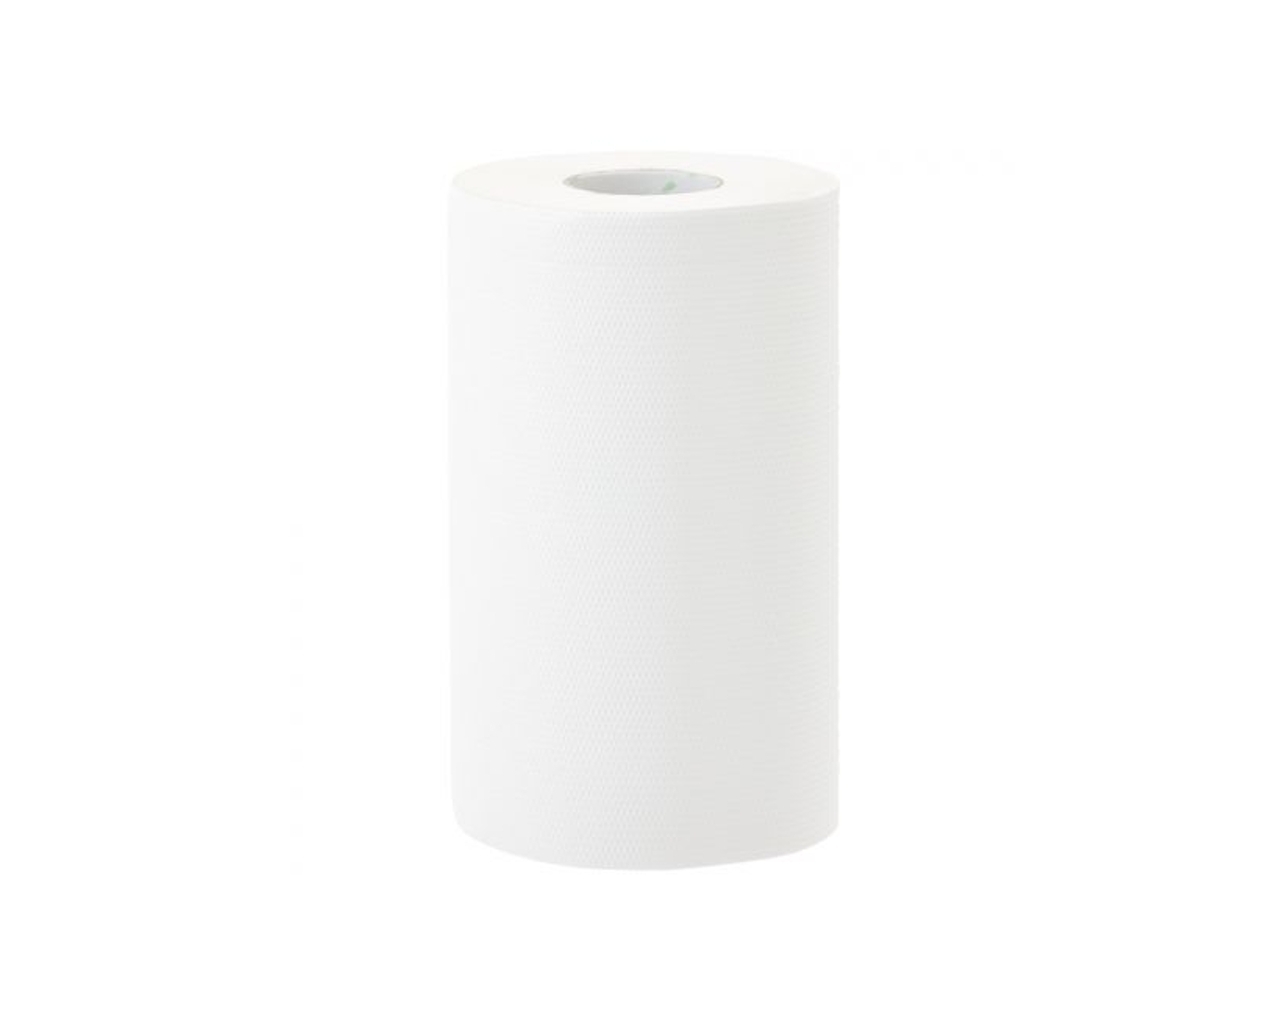 Ręczniki papierowe w roli MERIDA PREMIUM MINI, białe, celulozowe, trzywarstwowe, zgrzewka 12 szt.